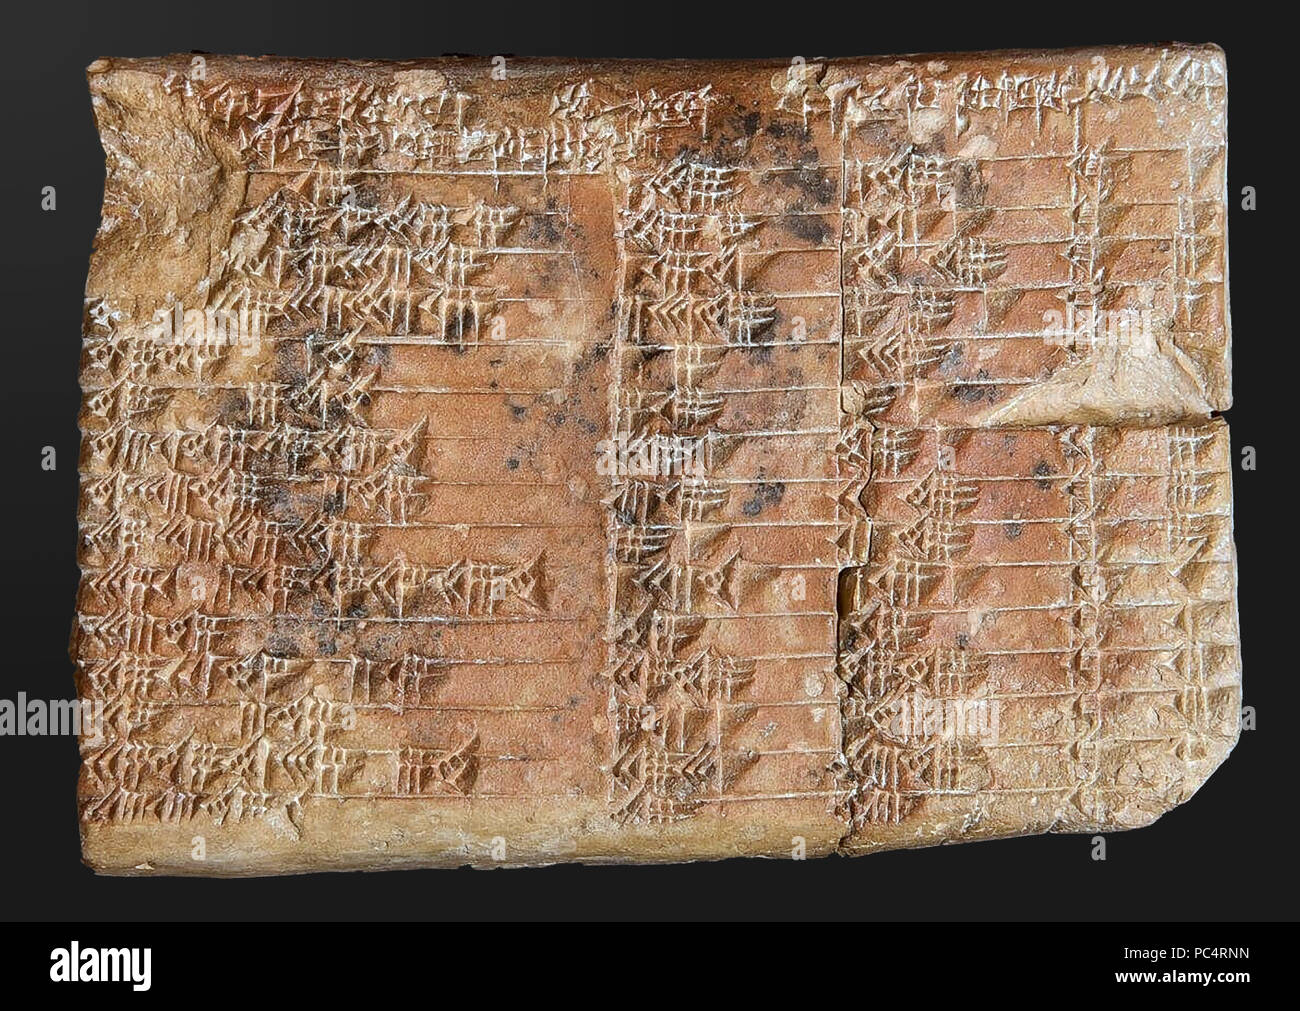 6290. Babilonese tavoletta cuneiforme che trattano con complicati problemi matematici, forse connesso con problemi architettonici. C. 1700 BC. Mesopotamia. Foto Stock